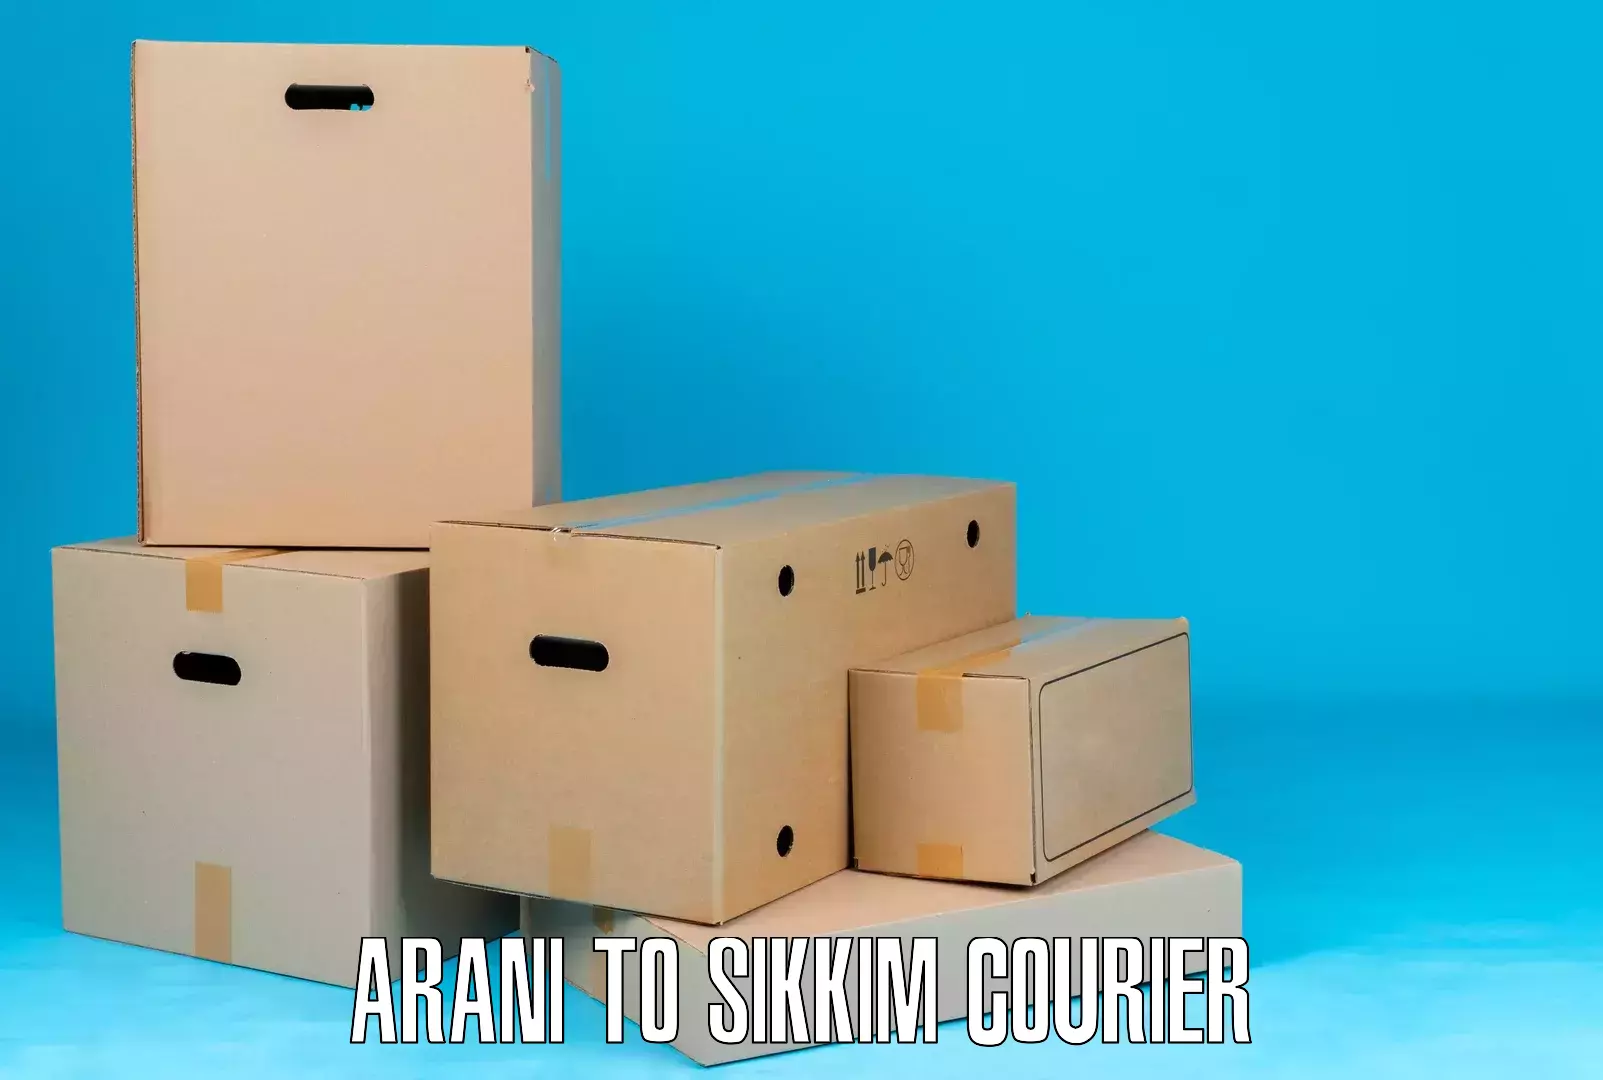 Door-to-door shipment Arani to Pelling